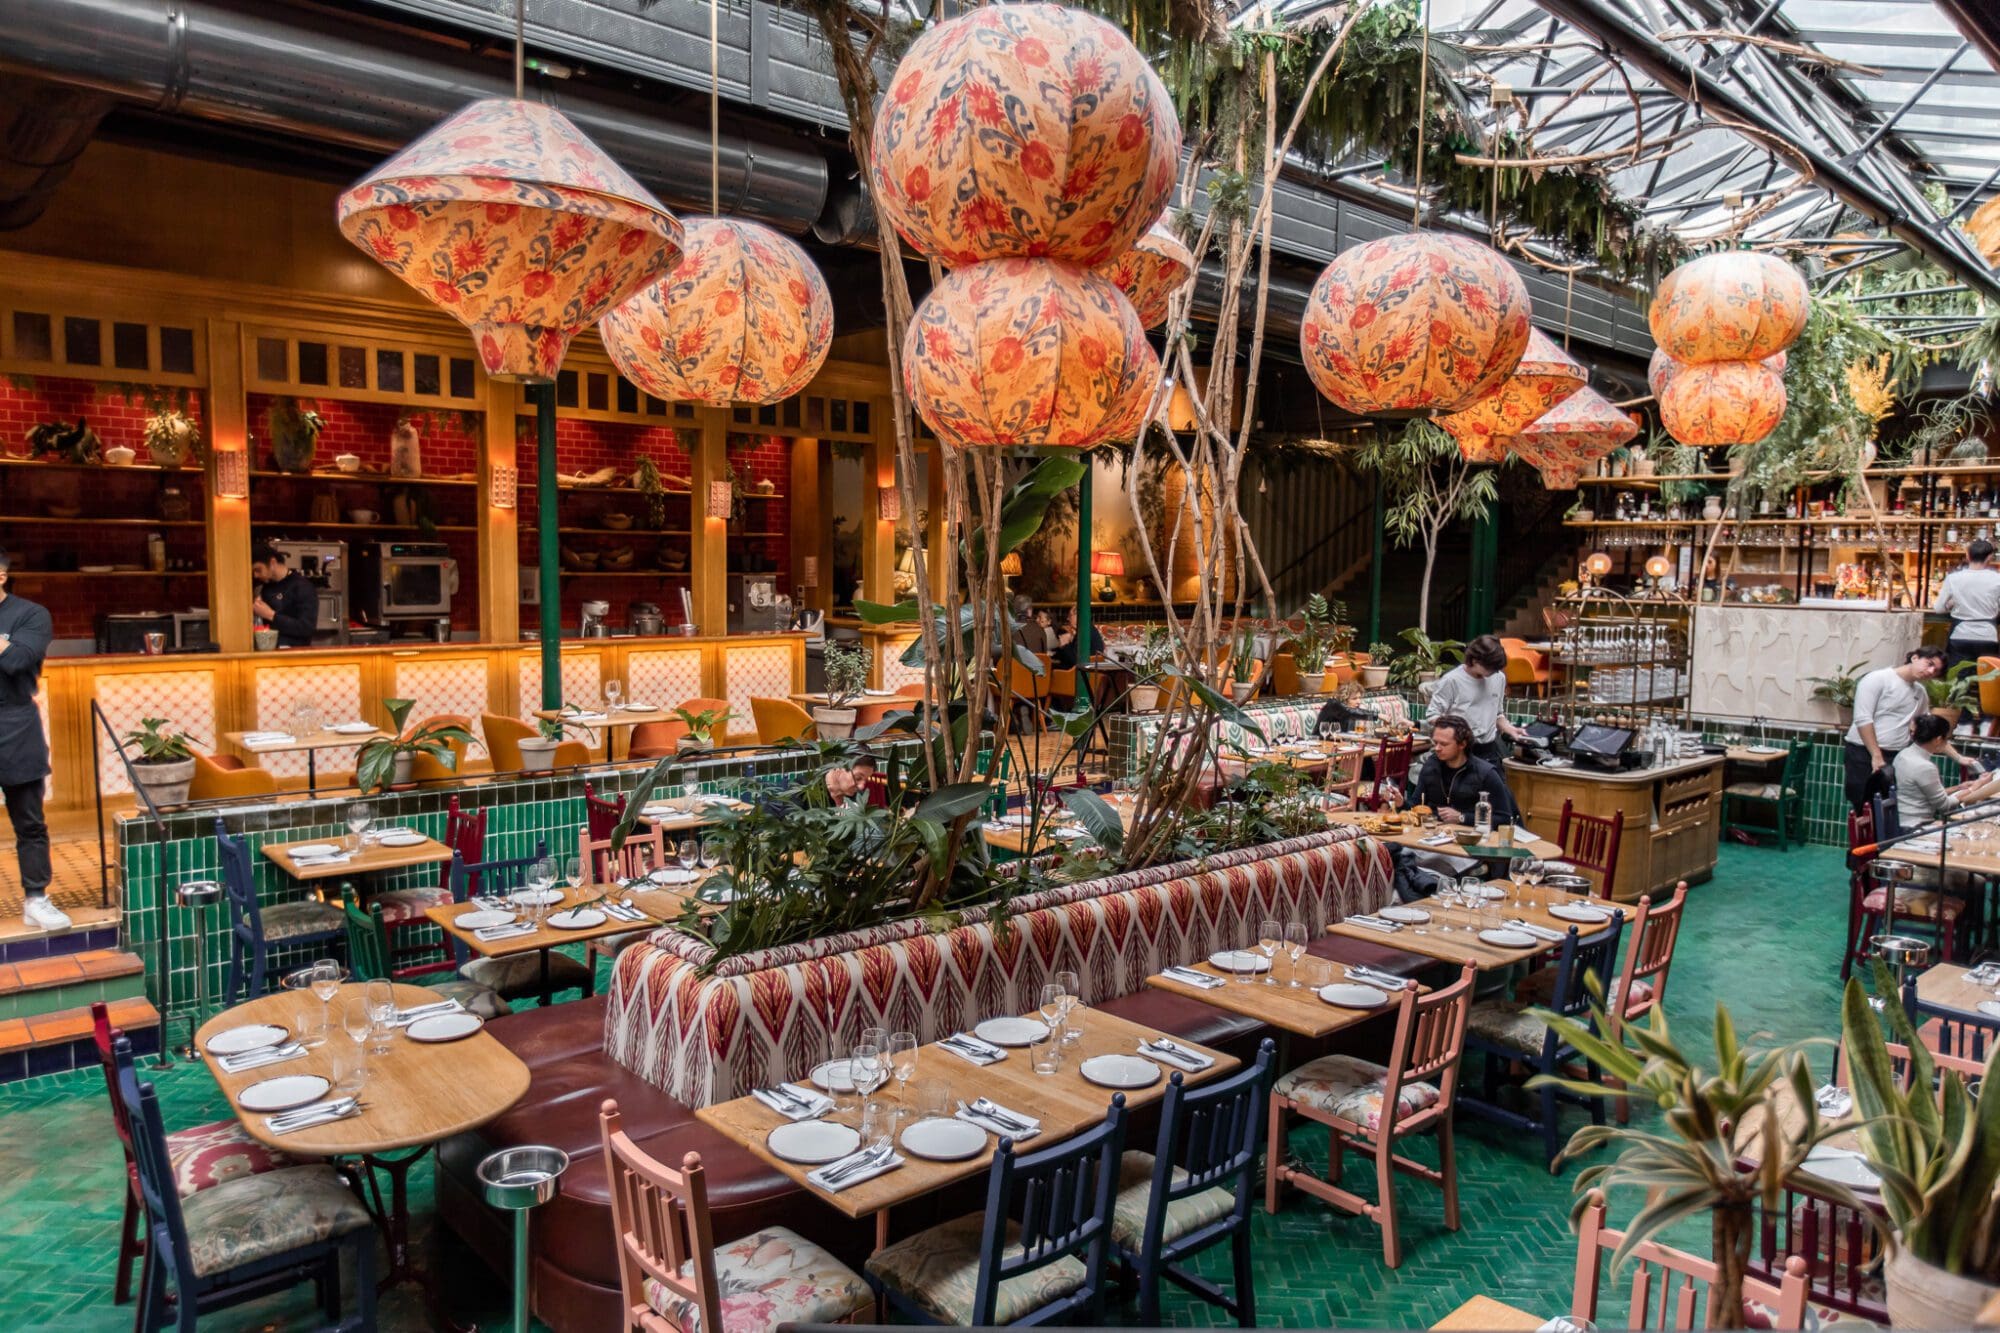 Andia Restaurant Paris Instagram Aesthetic Restaurants Dining Food Sushi Latin American Interior